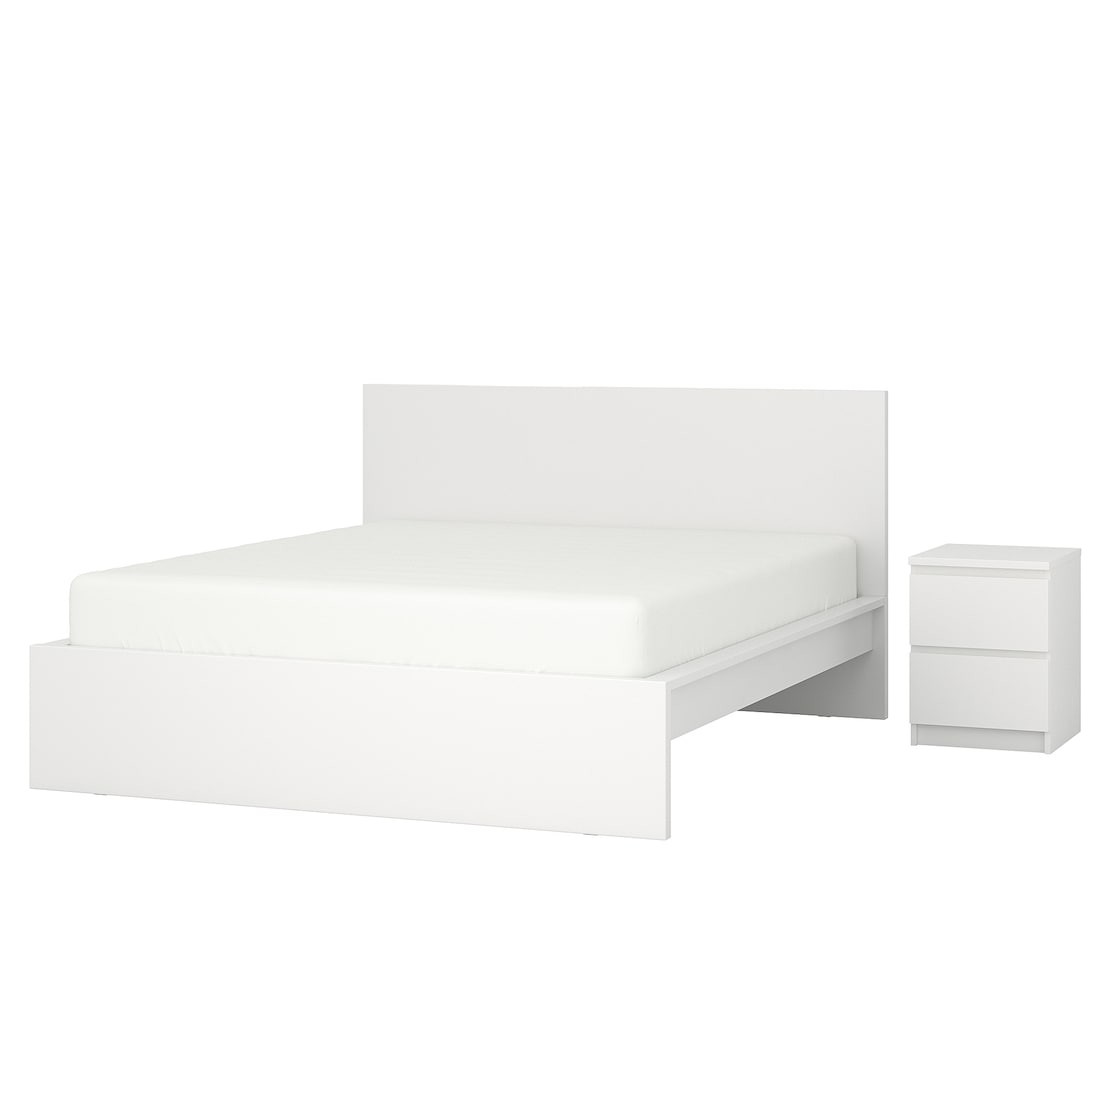 MALM МАЛЬМ Меблі для спальні, комплект 2 шт., білий, 180x200 см